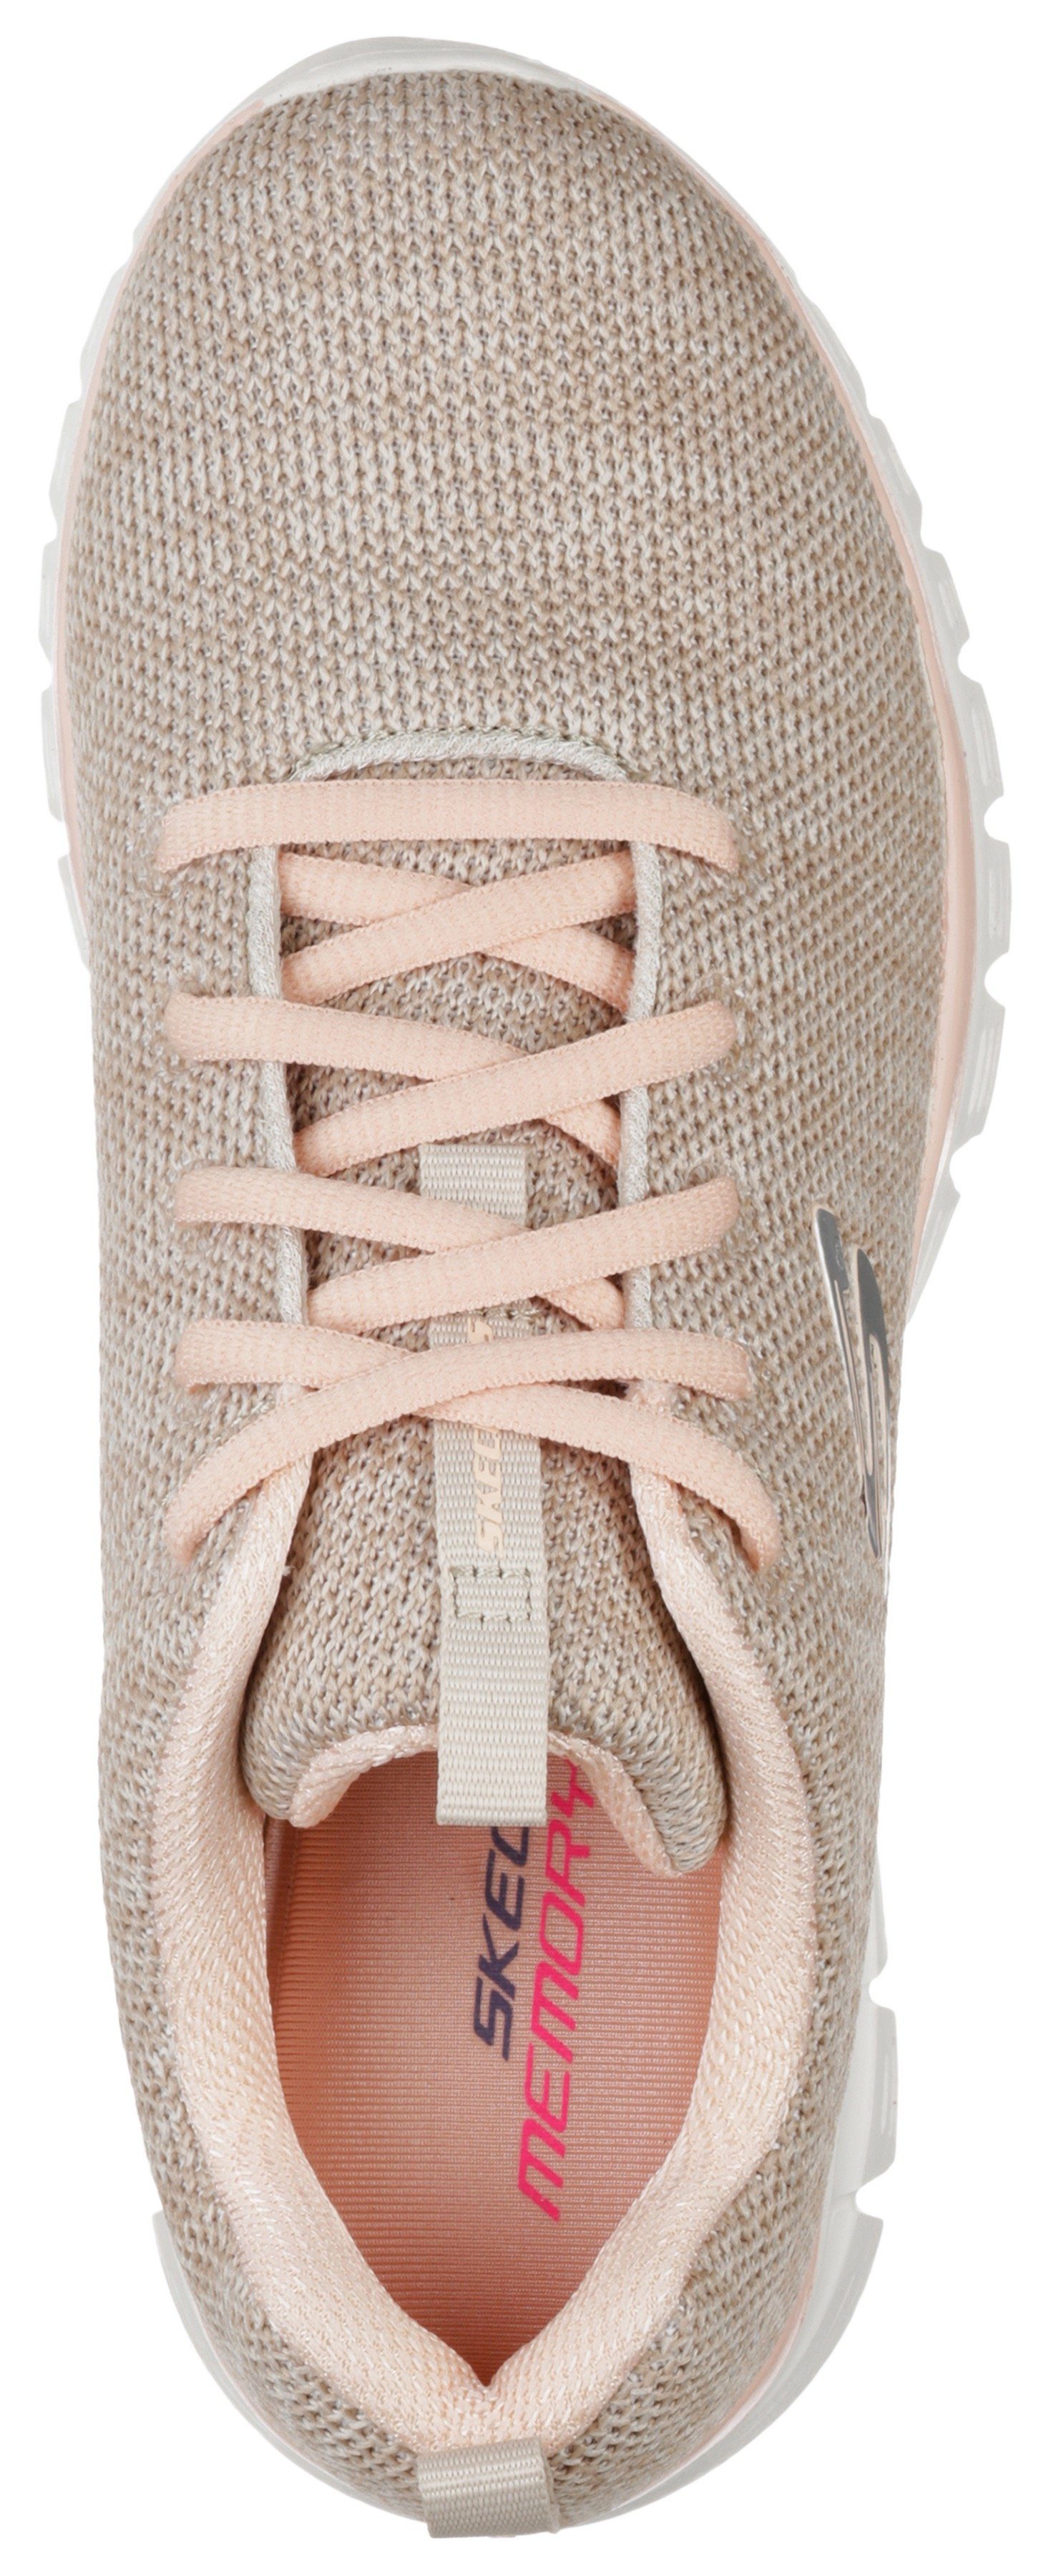 Fortune - Twisted mit Foam beige-rosa Graceful Memory Skechers Sneaker